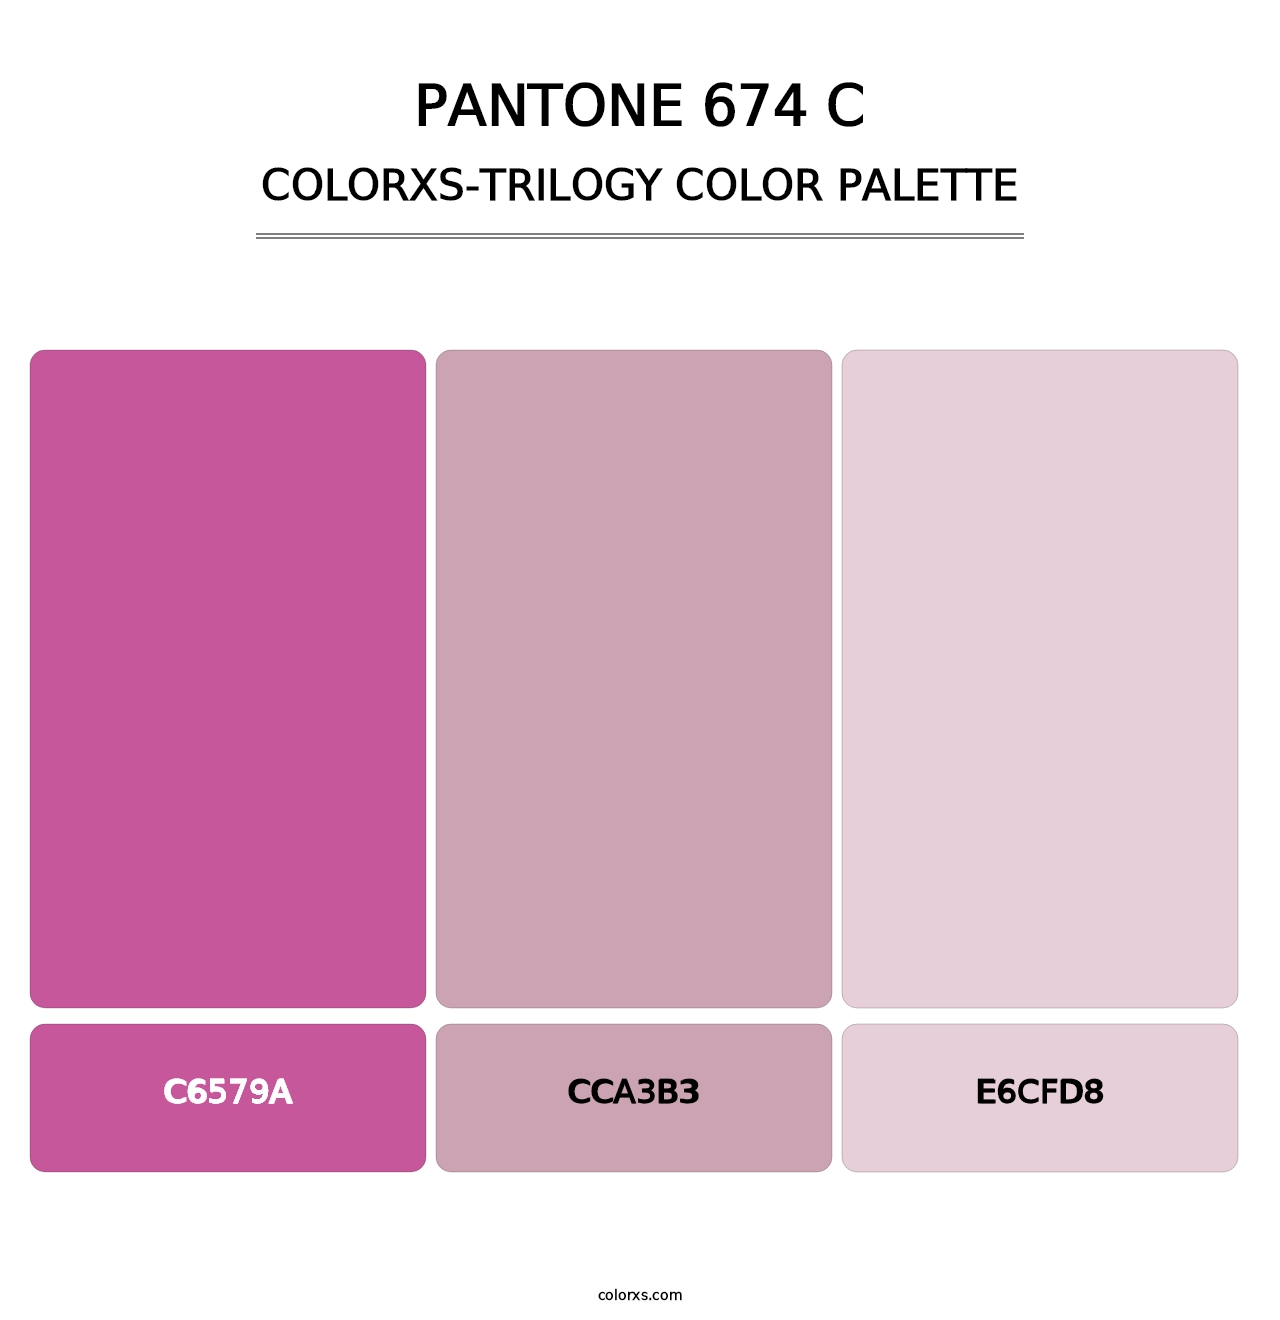 PANTONE 674 C - Colorxs Trilogy Palette